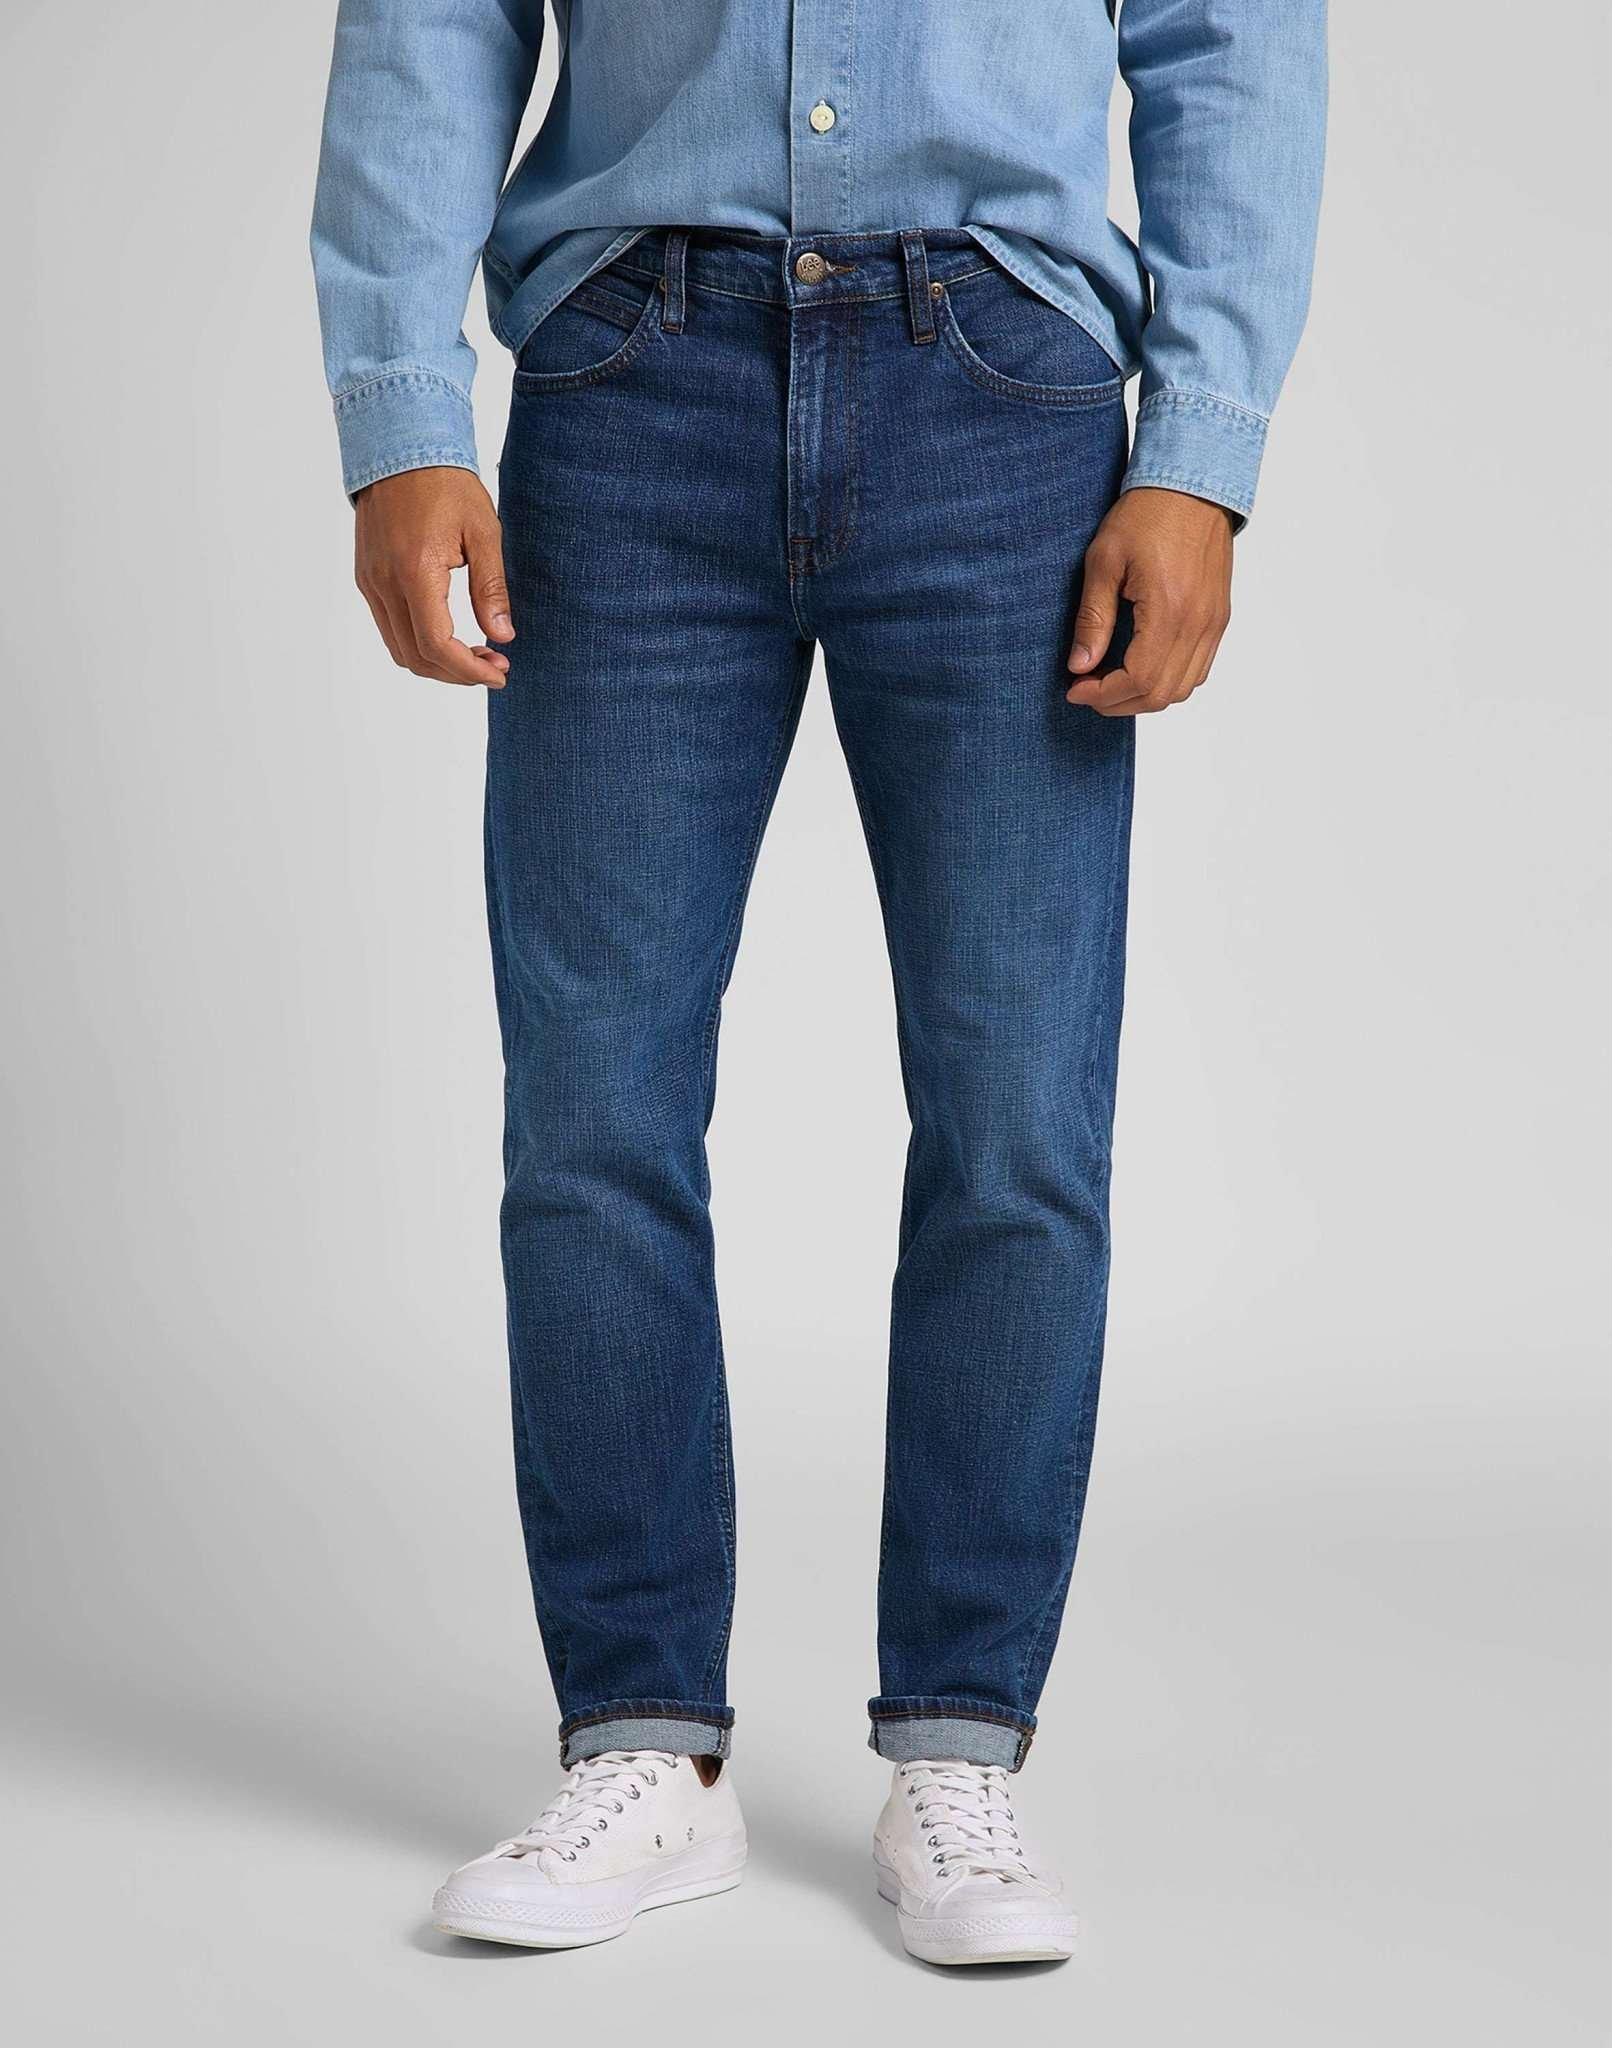 Jeans Straight Leg Austin Herren Blau Denim L30/W33 von Lee